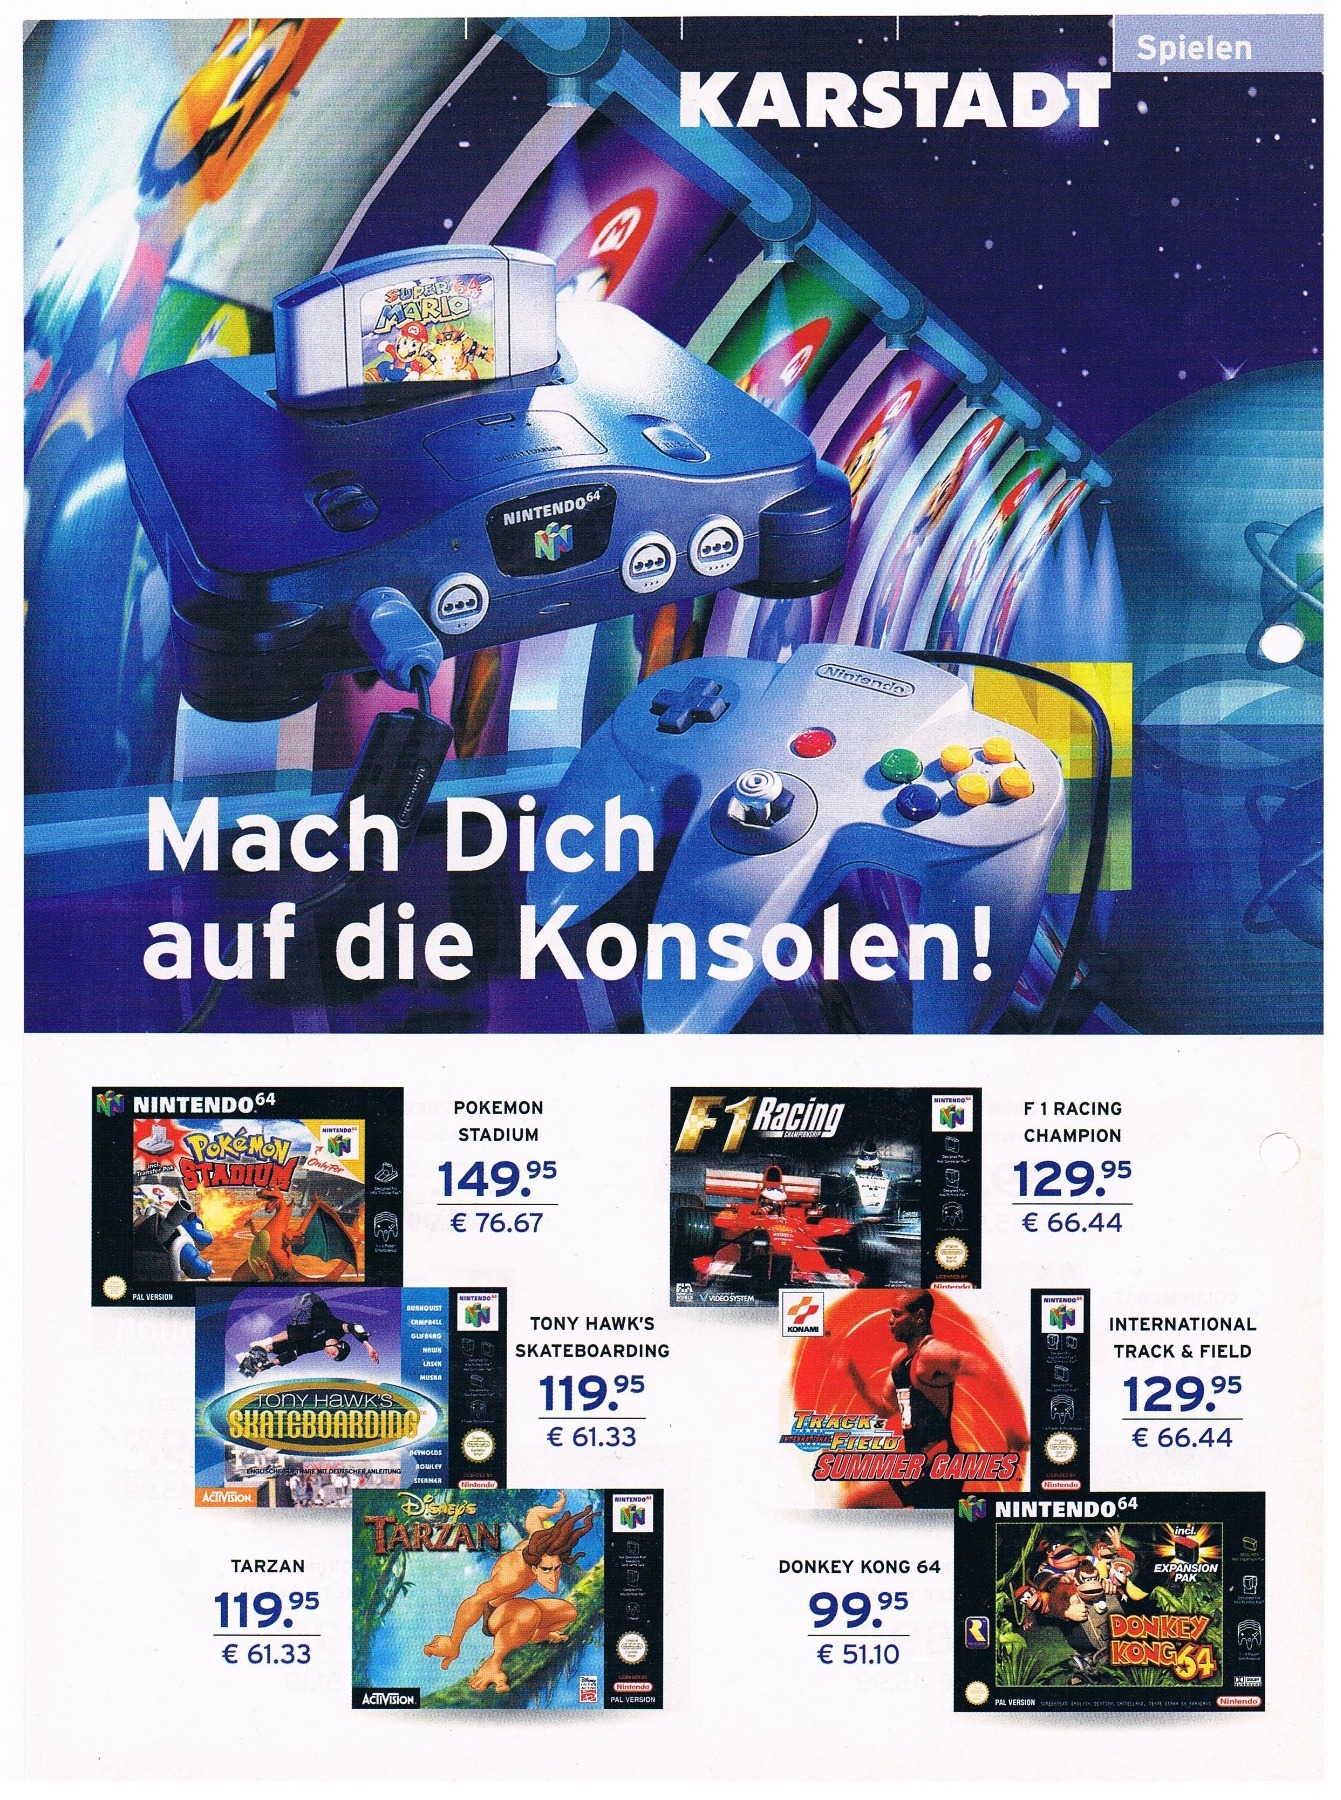 Karstadt - Werbung PlayStation 1 / N64 2